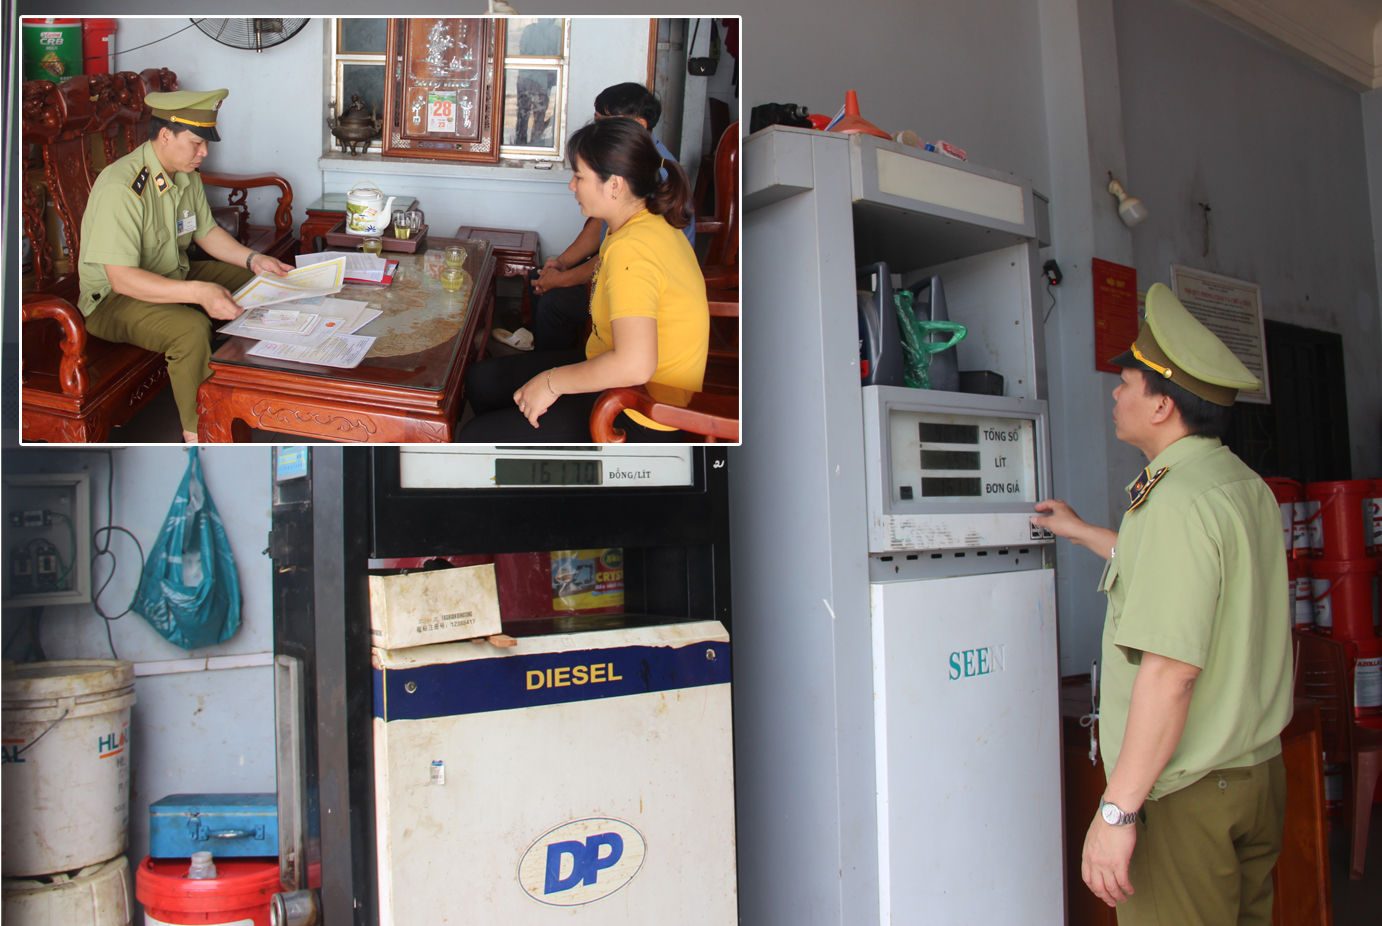 Đội quản lý thị trường số 4 kiểm tra cây xăng xầu tại xã Tiến Thủy, Quỳnh Lưu và làm việc với một trong những chủ cửa hàng xăng xầu tại xã Tiến Thủy.